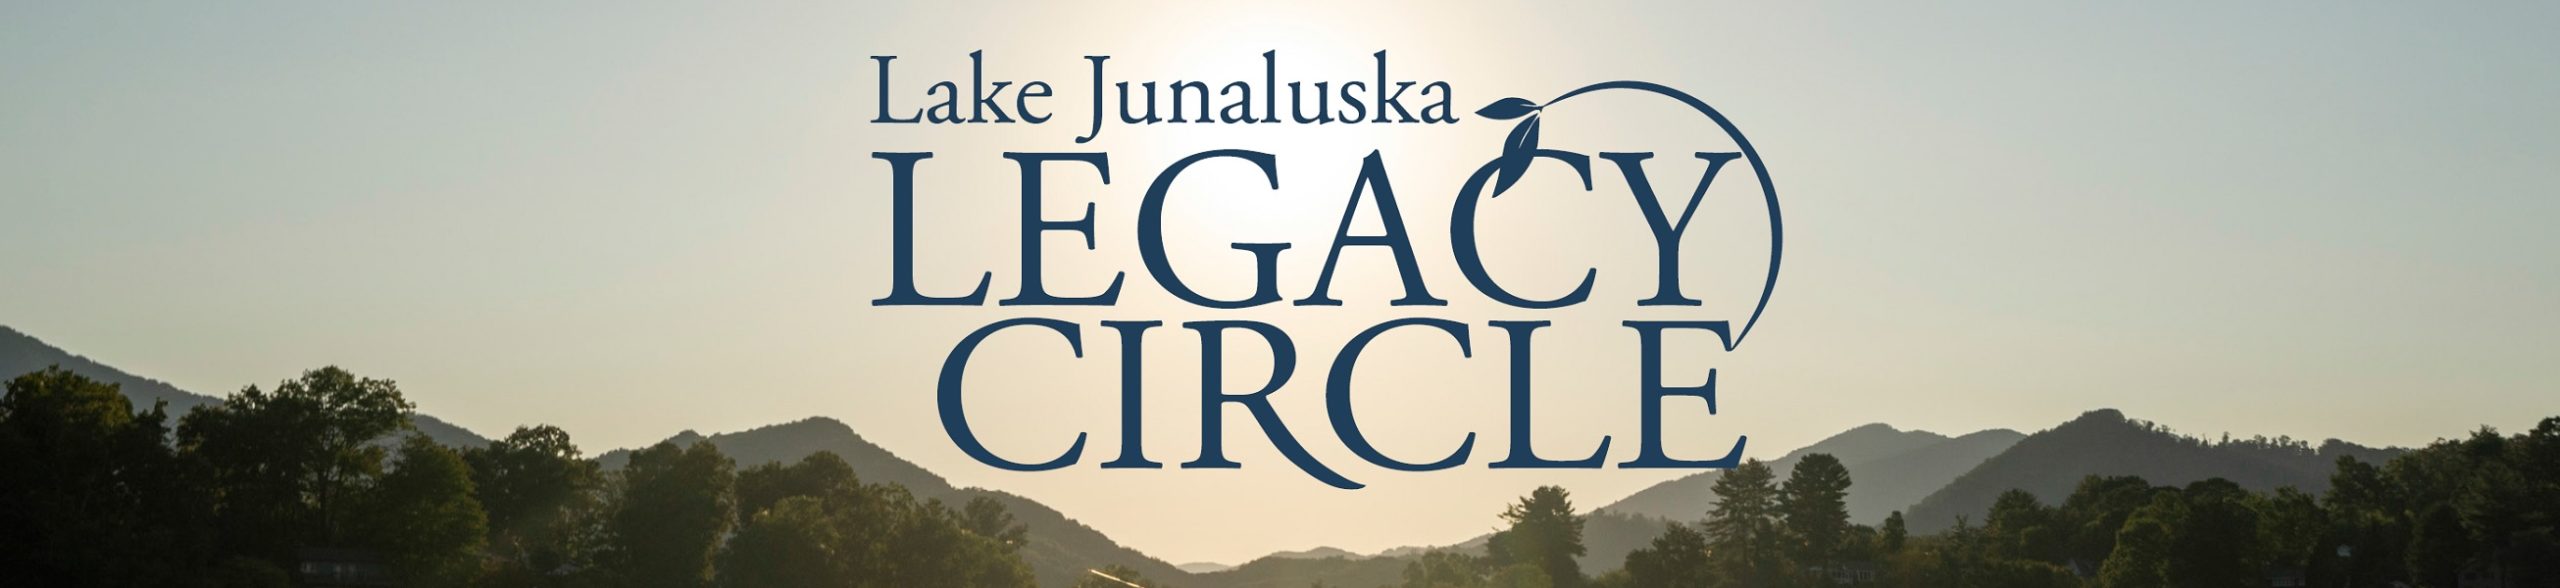 Legacy Circle logo and photo